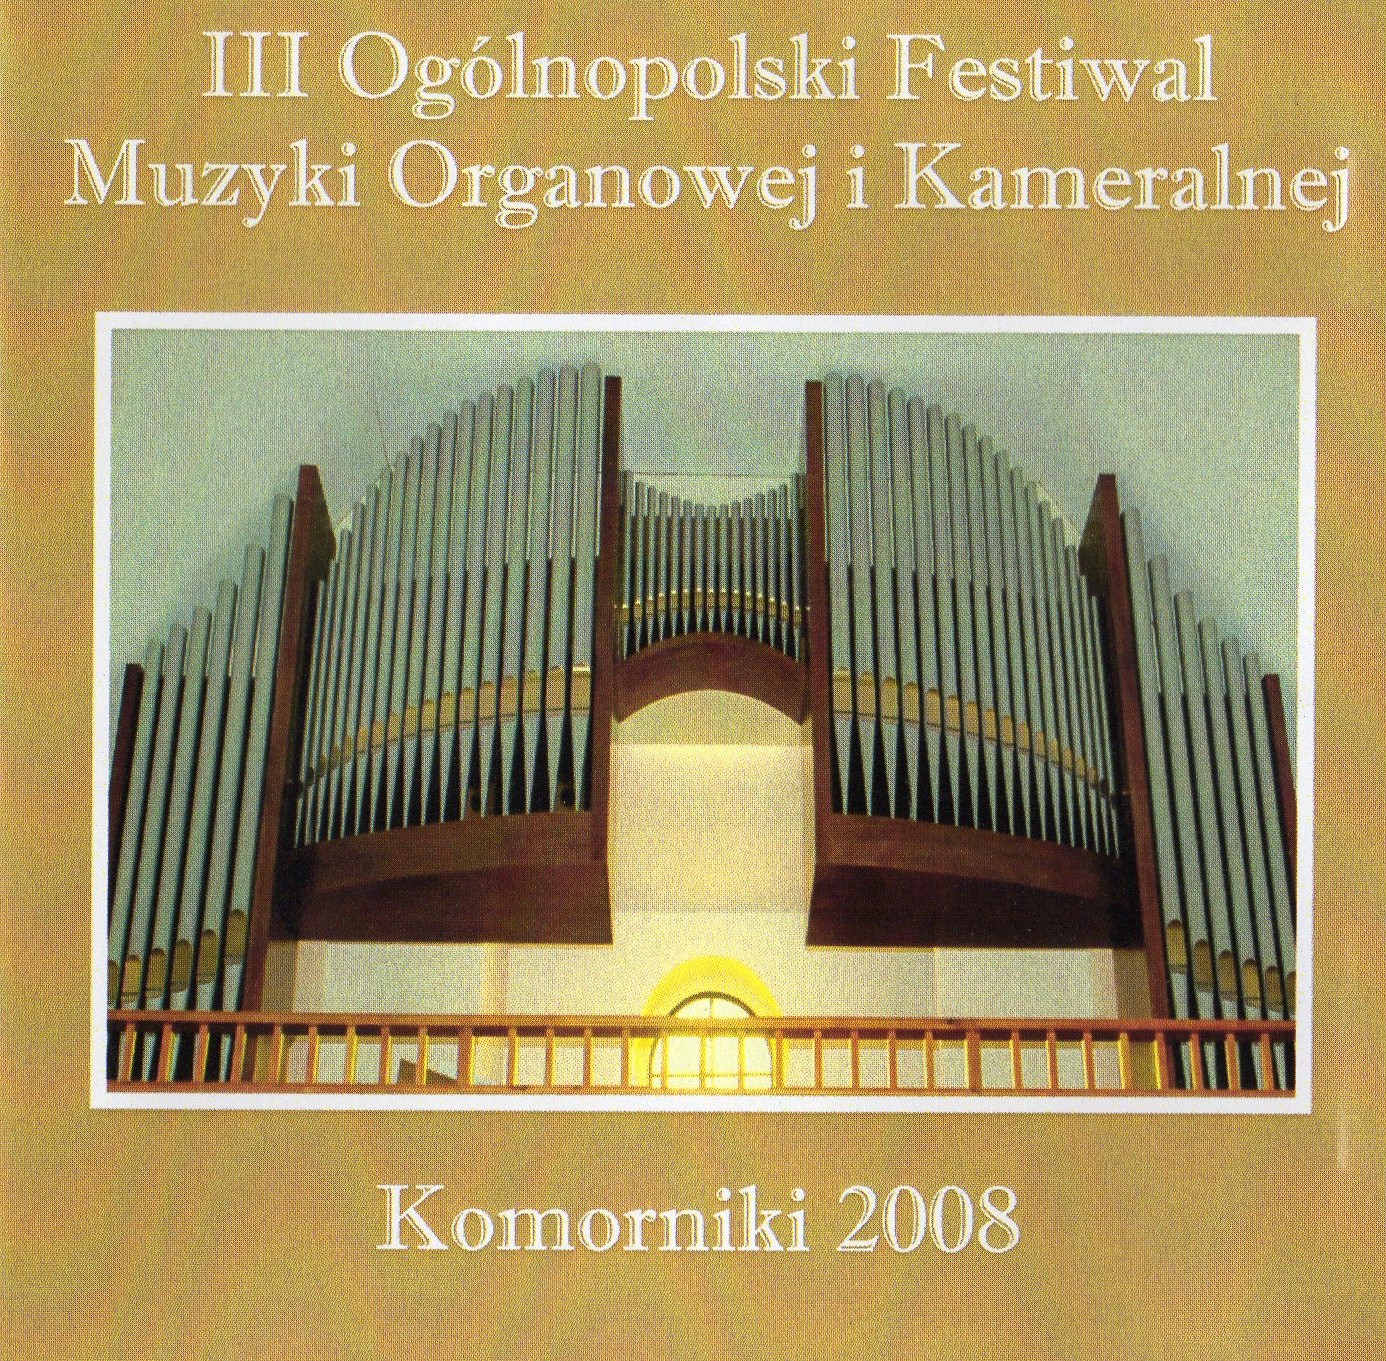 III Ogólnopolski Festiwal Muzyki Organowej i Kameralnej Komorniki 2008